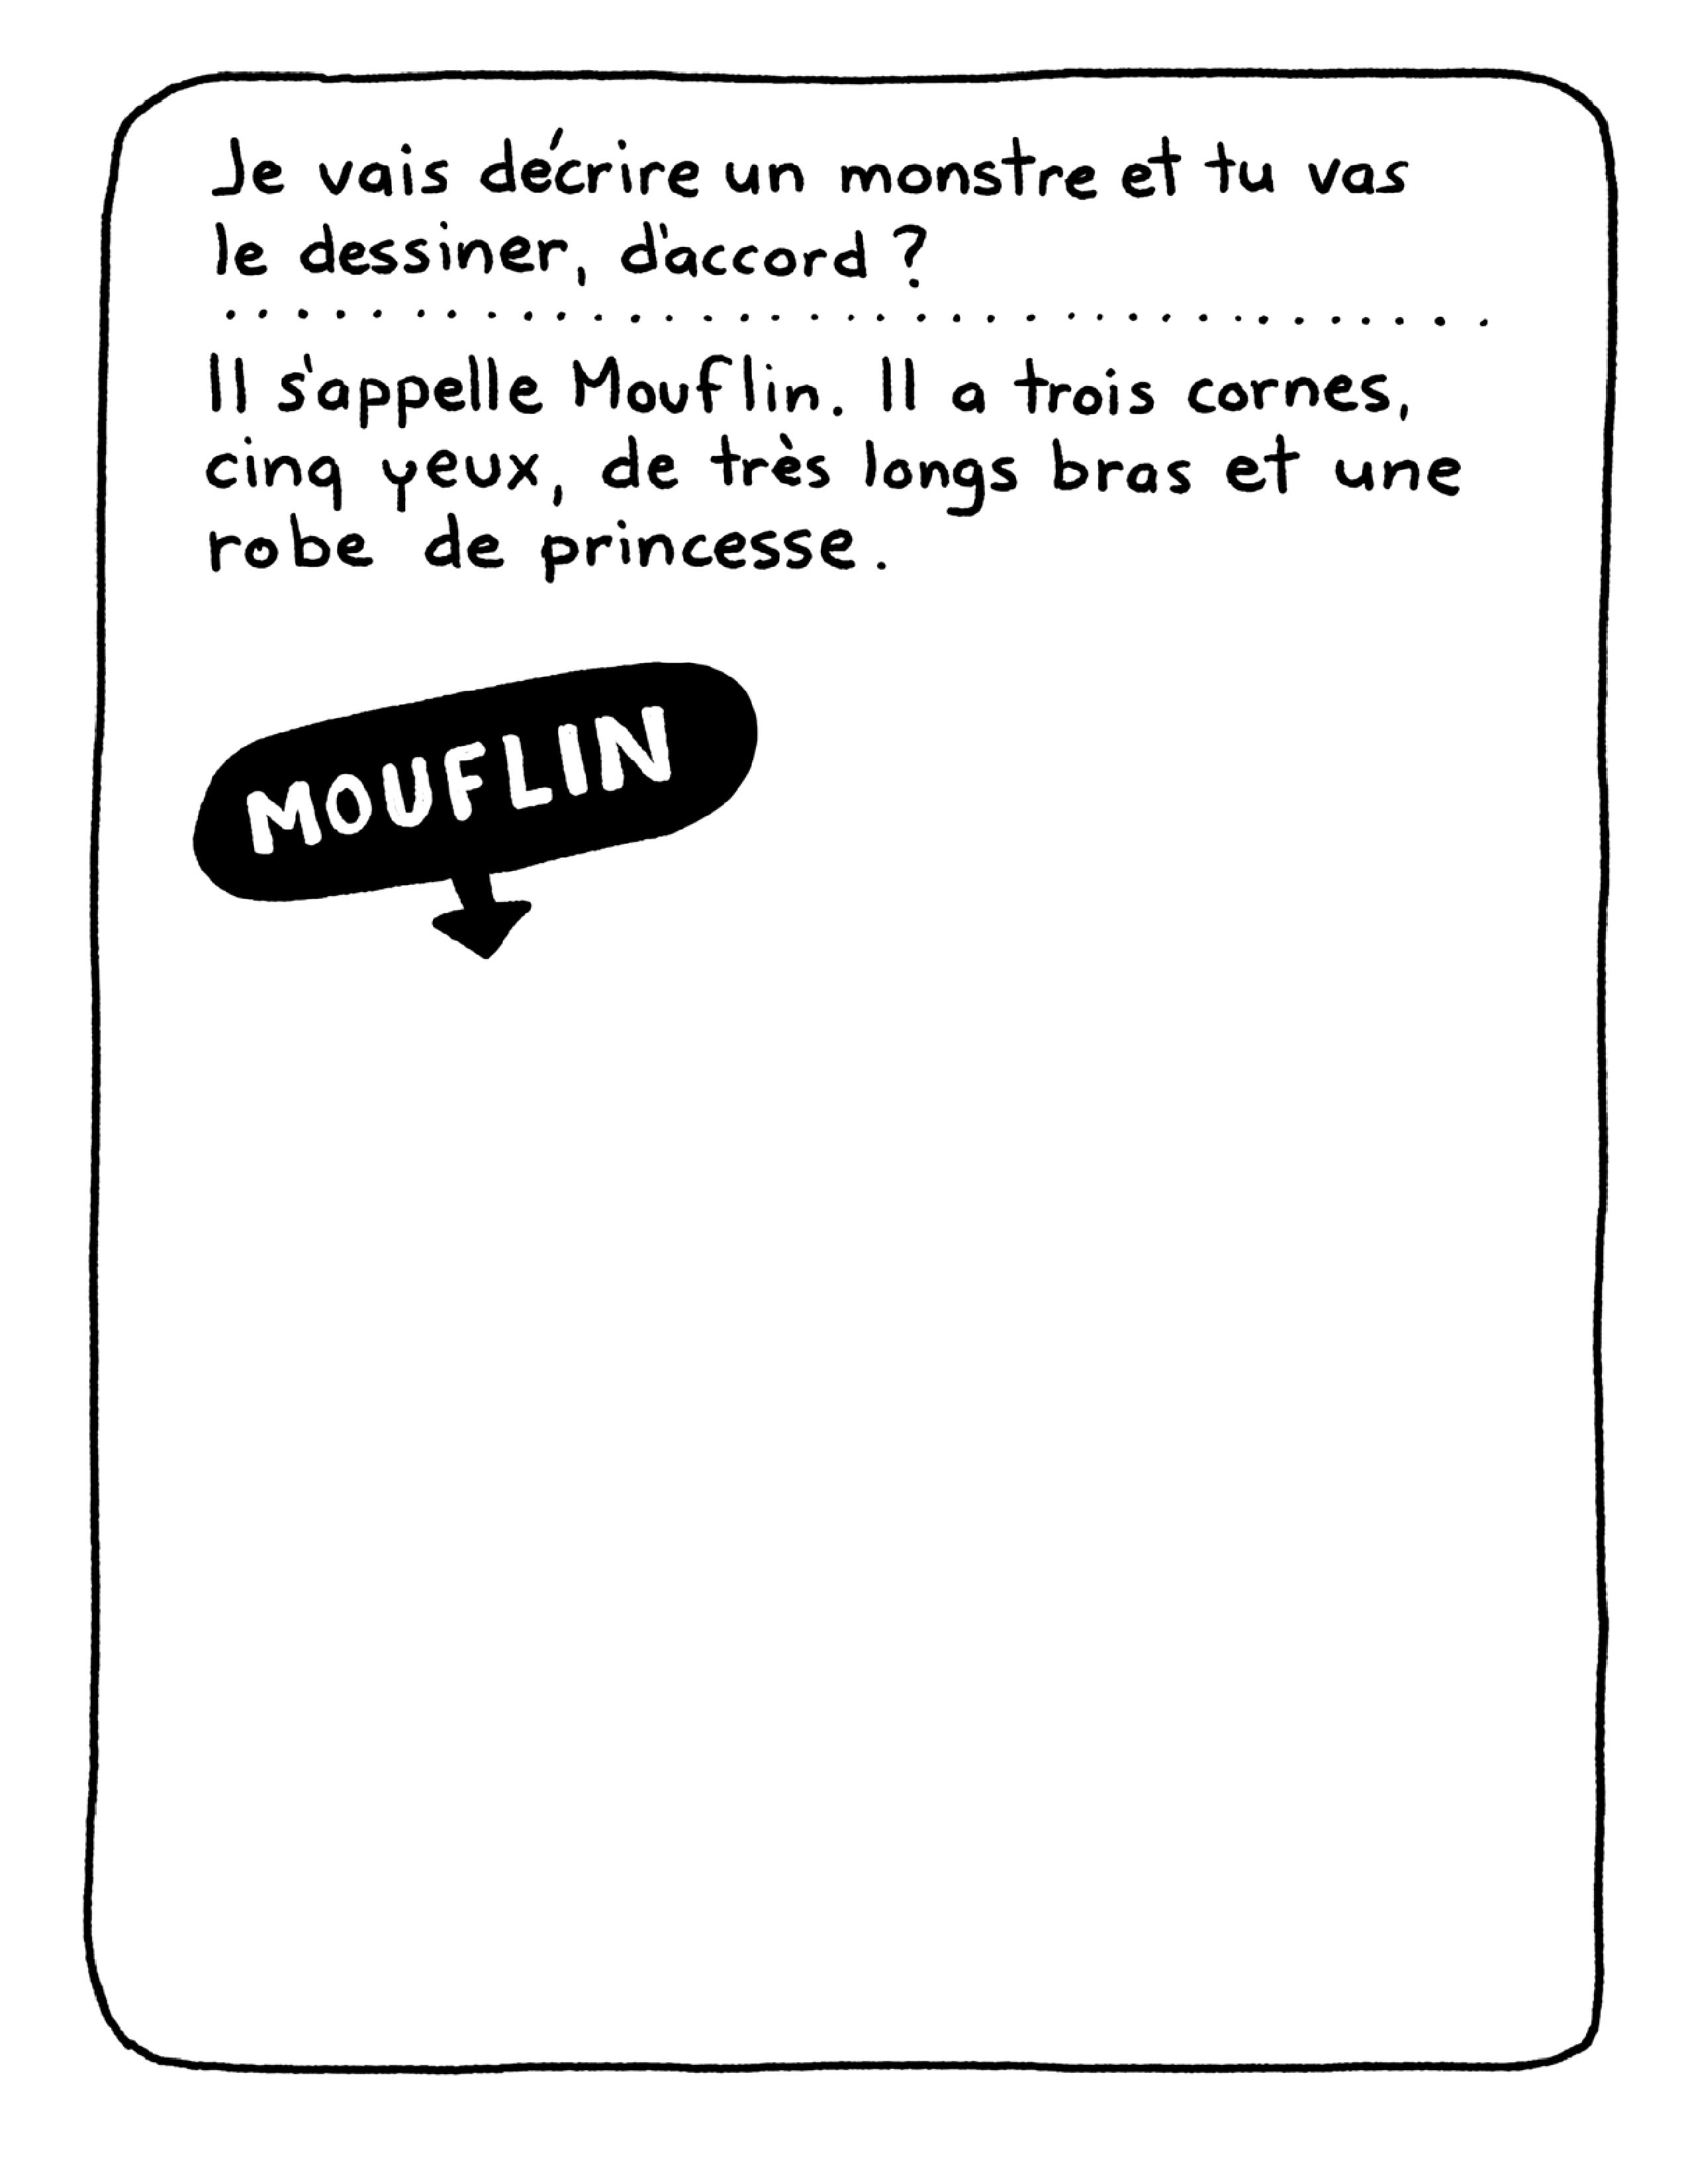 Mouflin